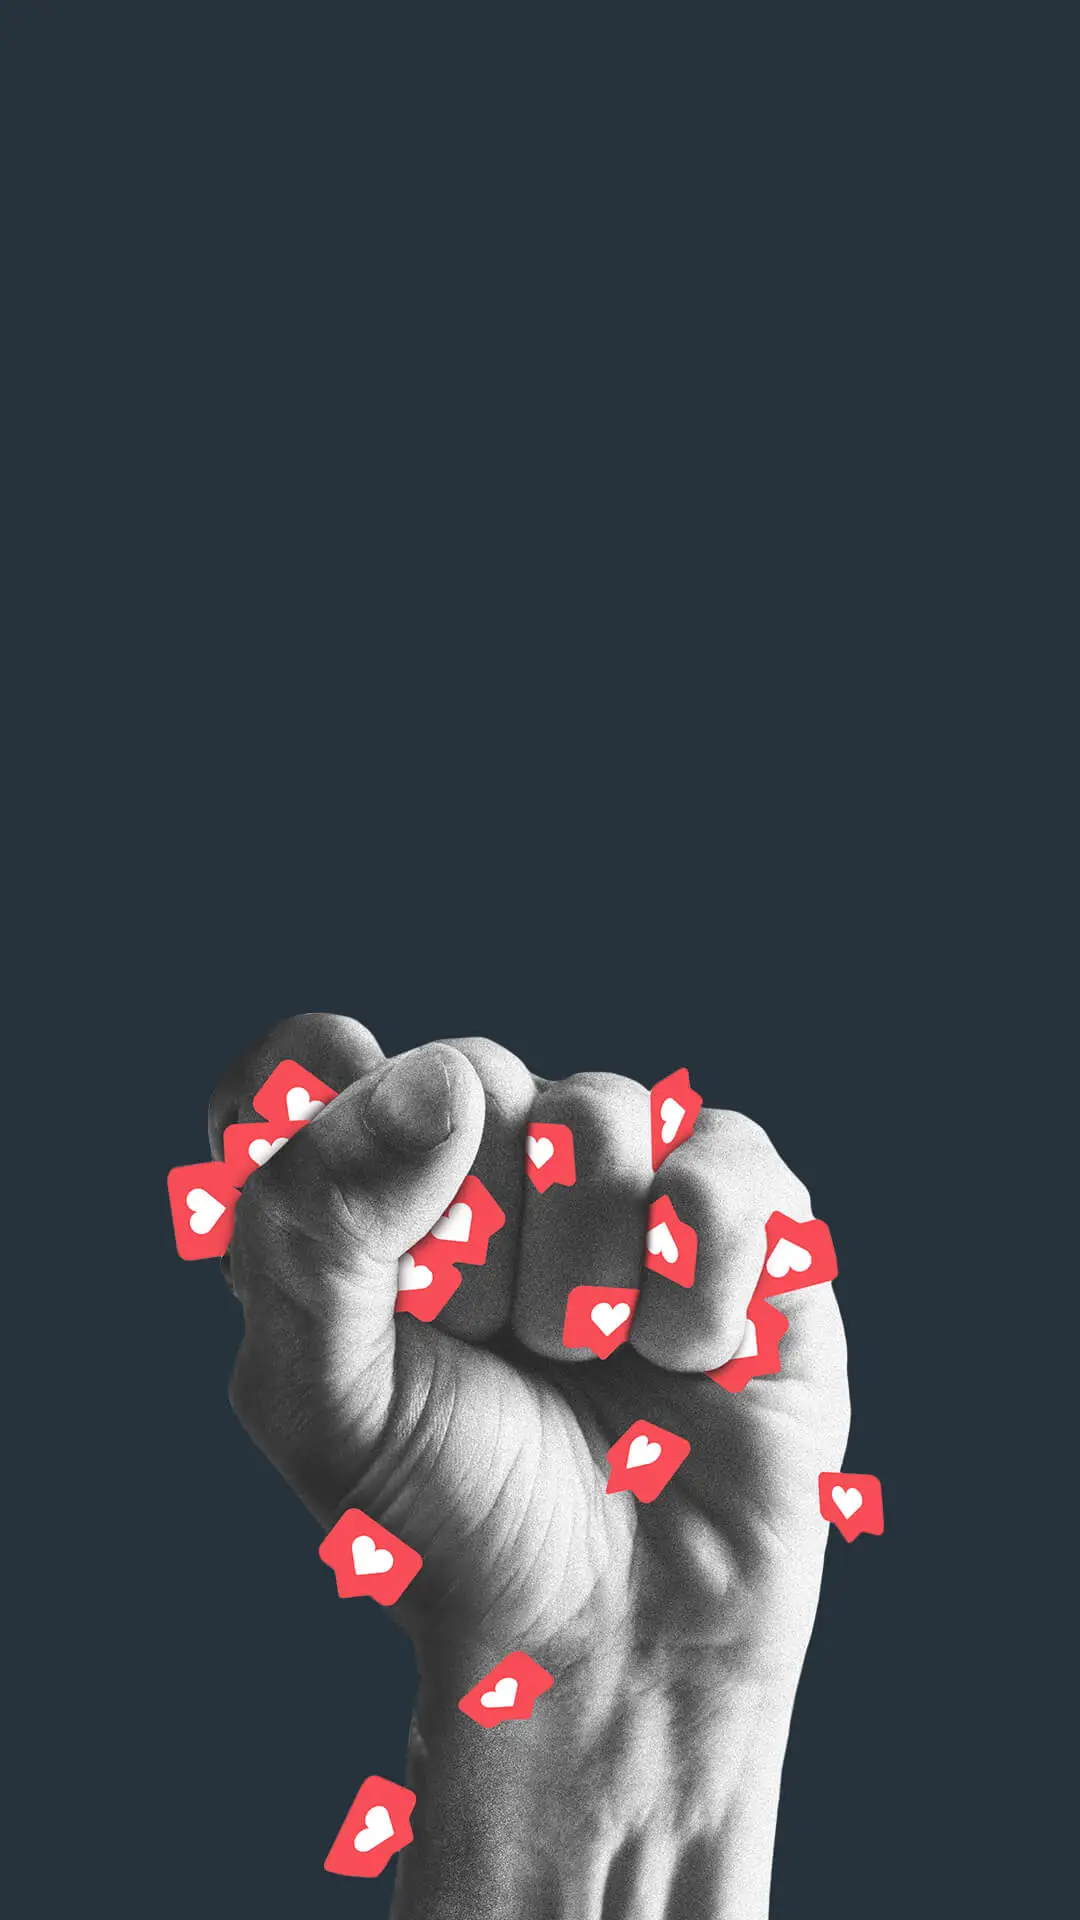 Ilustración de un puño cerrado con íconos de corazón a su alrededor